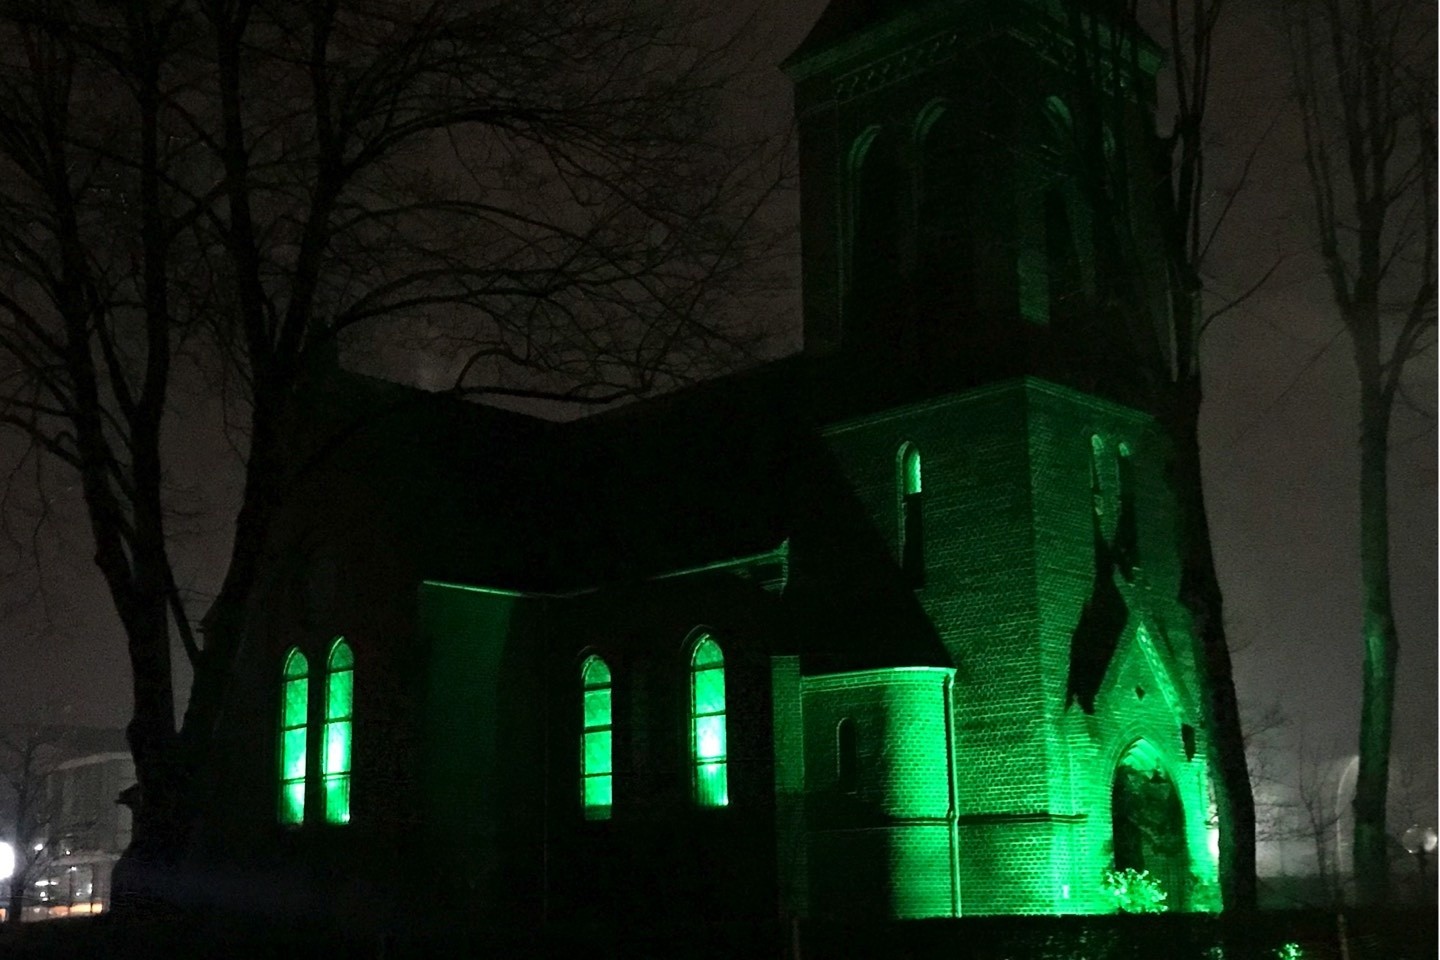 Evangelische Kirche,Warendorf,Hoffnung,Grünes Licht,